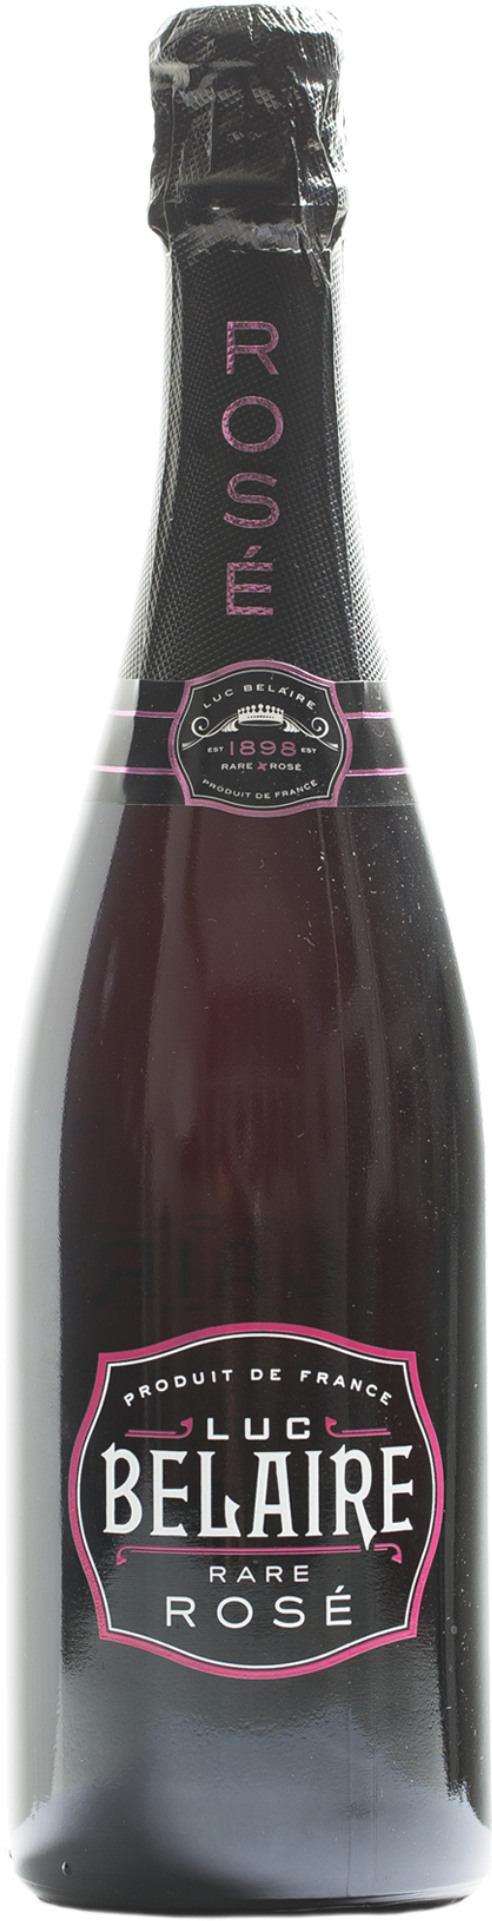 Luc Belaire Rosé - Luc Belaire Rare Rose Sparkling Wine - 1.5 L Bottle (800x2048), Png Download